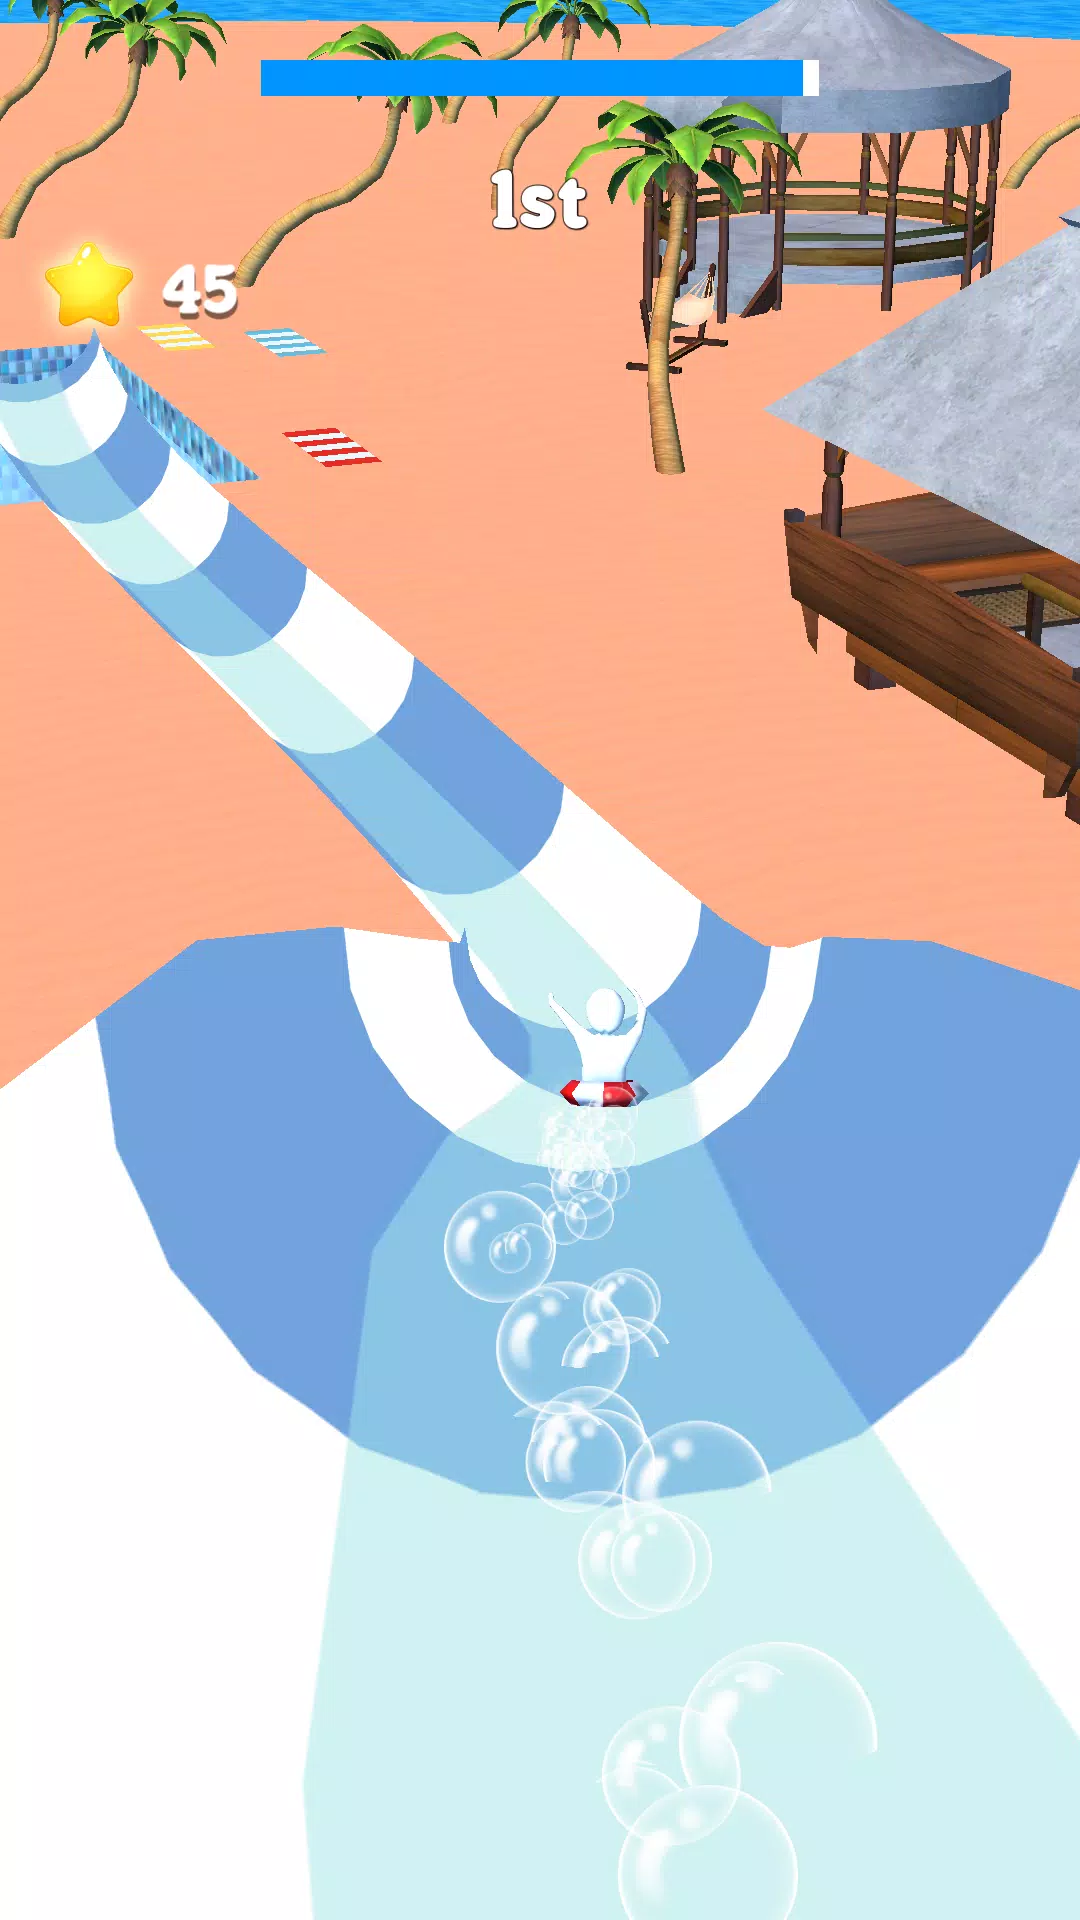 Waterpark Super Slide screenshot game